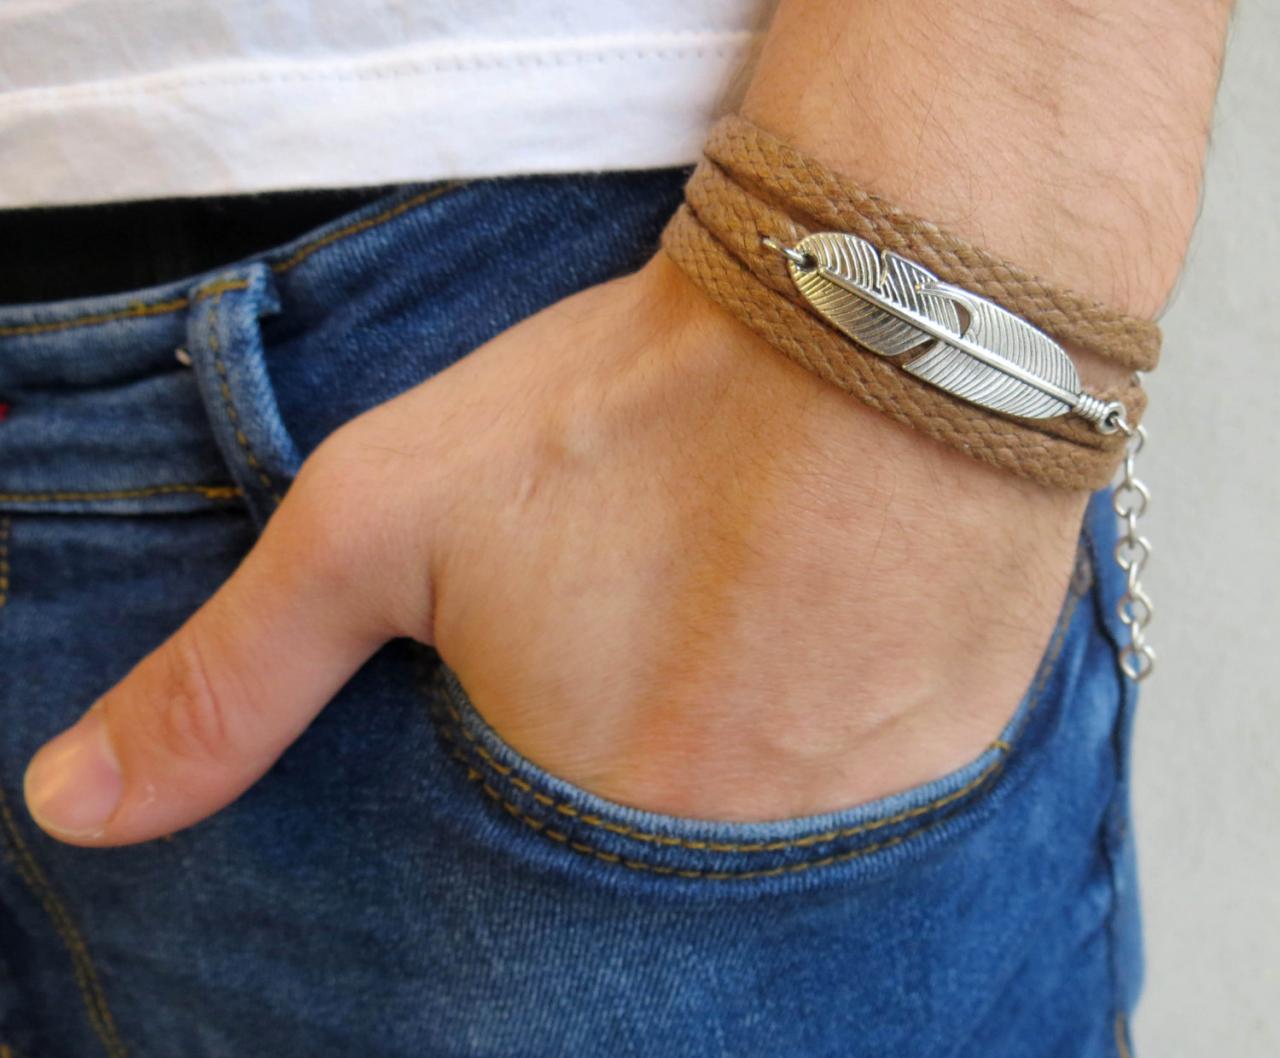 Men's Bracelet - Men's Feather Bracelet - Men's Jewelry - Men's Gift - Boyfrienf Gift - Husband Gift - Gift